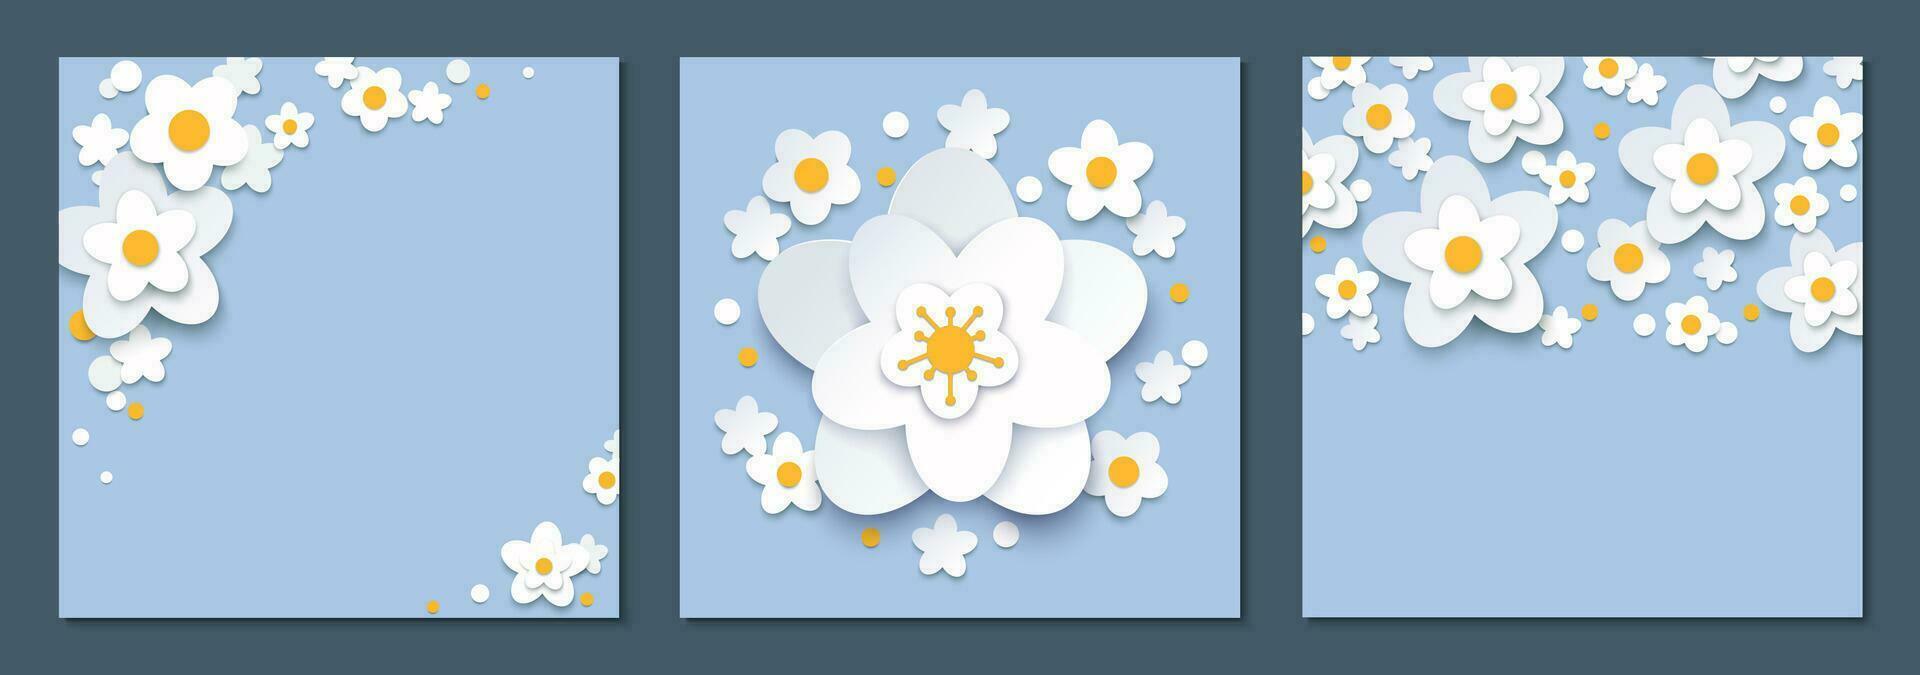 papier Couper floral carré arrière-plans collection blanc printemps fleurs sur bleu avec copie espace pour texte vecteur